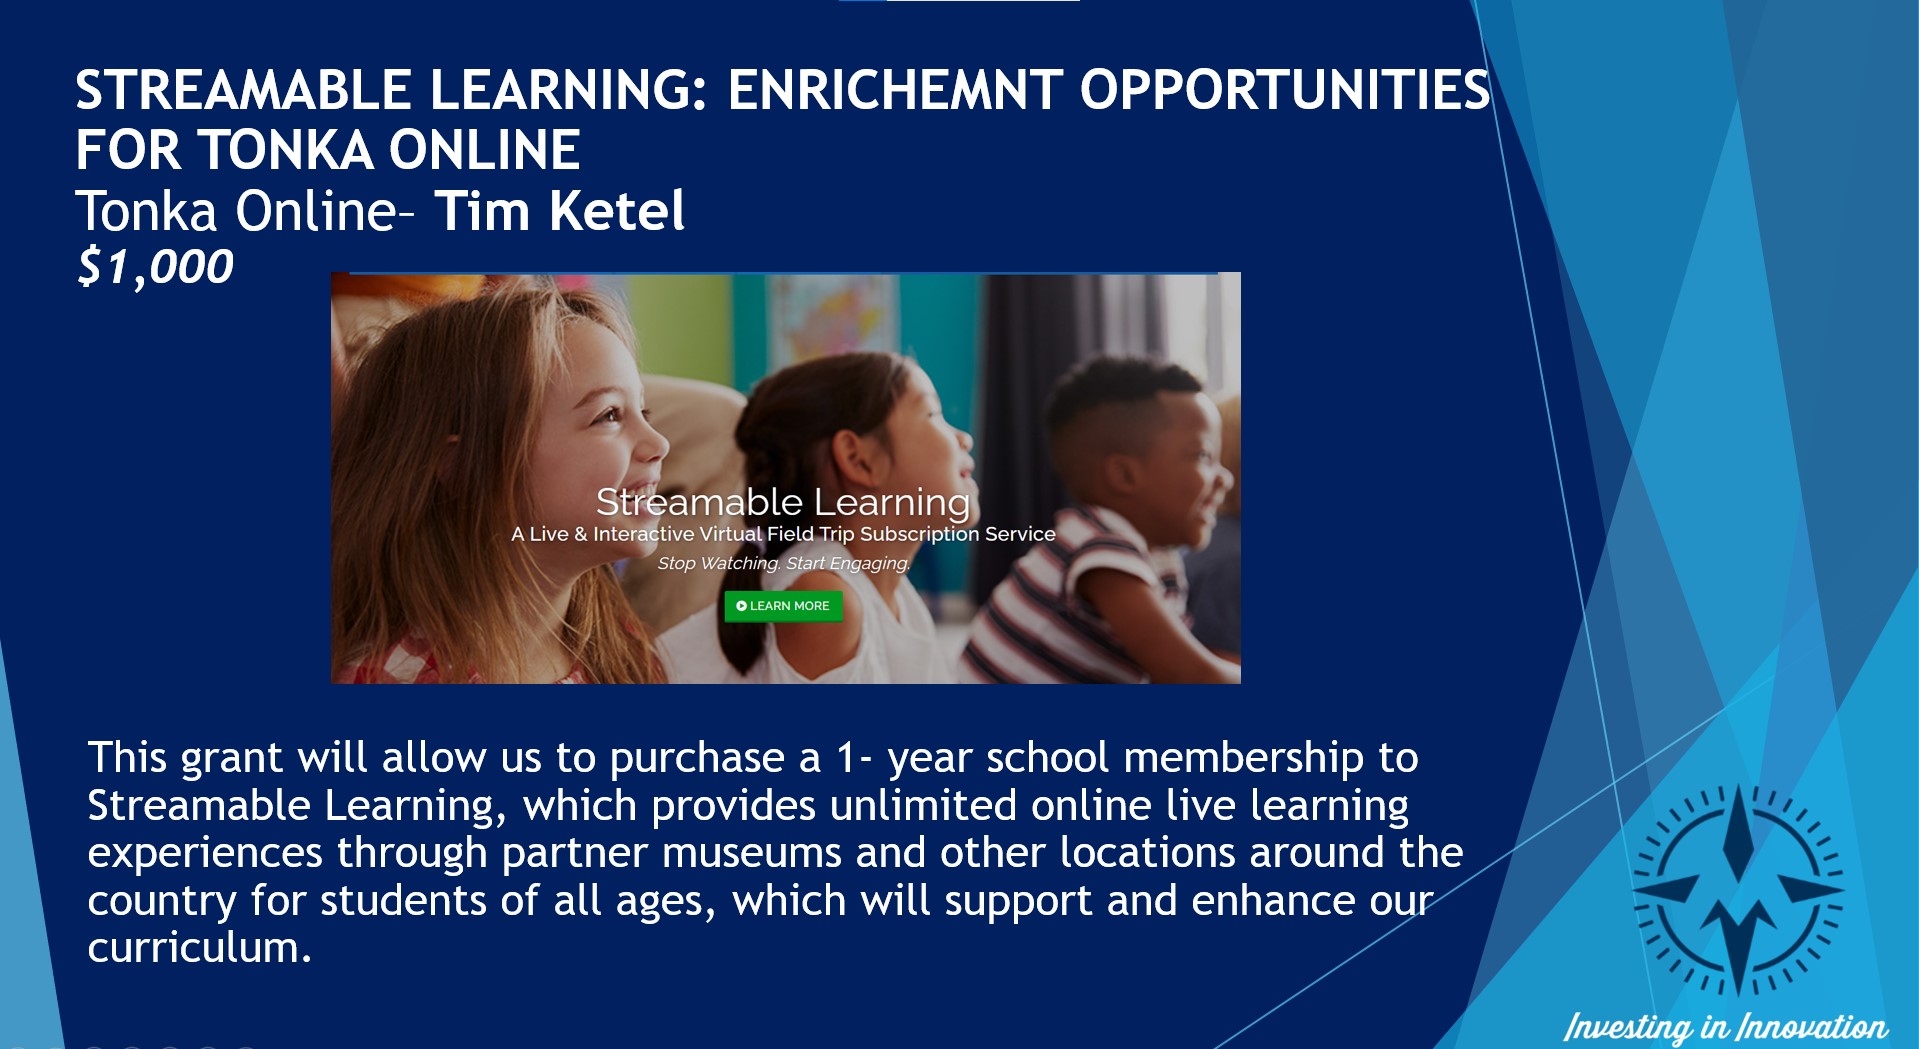 Oportunidades de enriquecimiento del aprendizaje en tiempo real